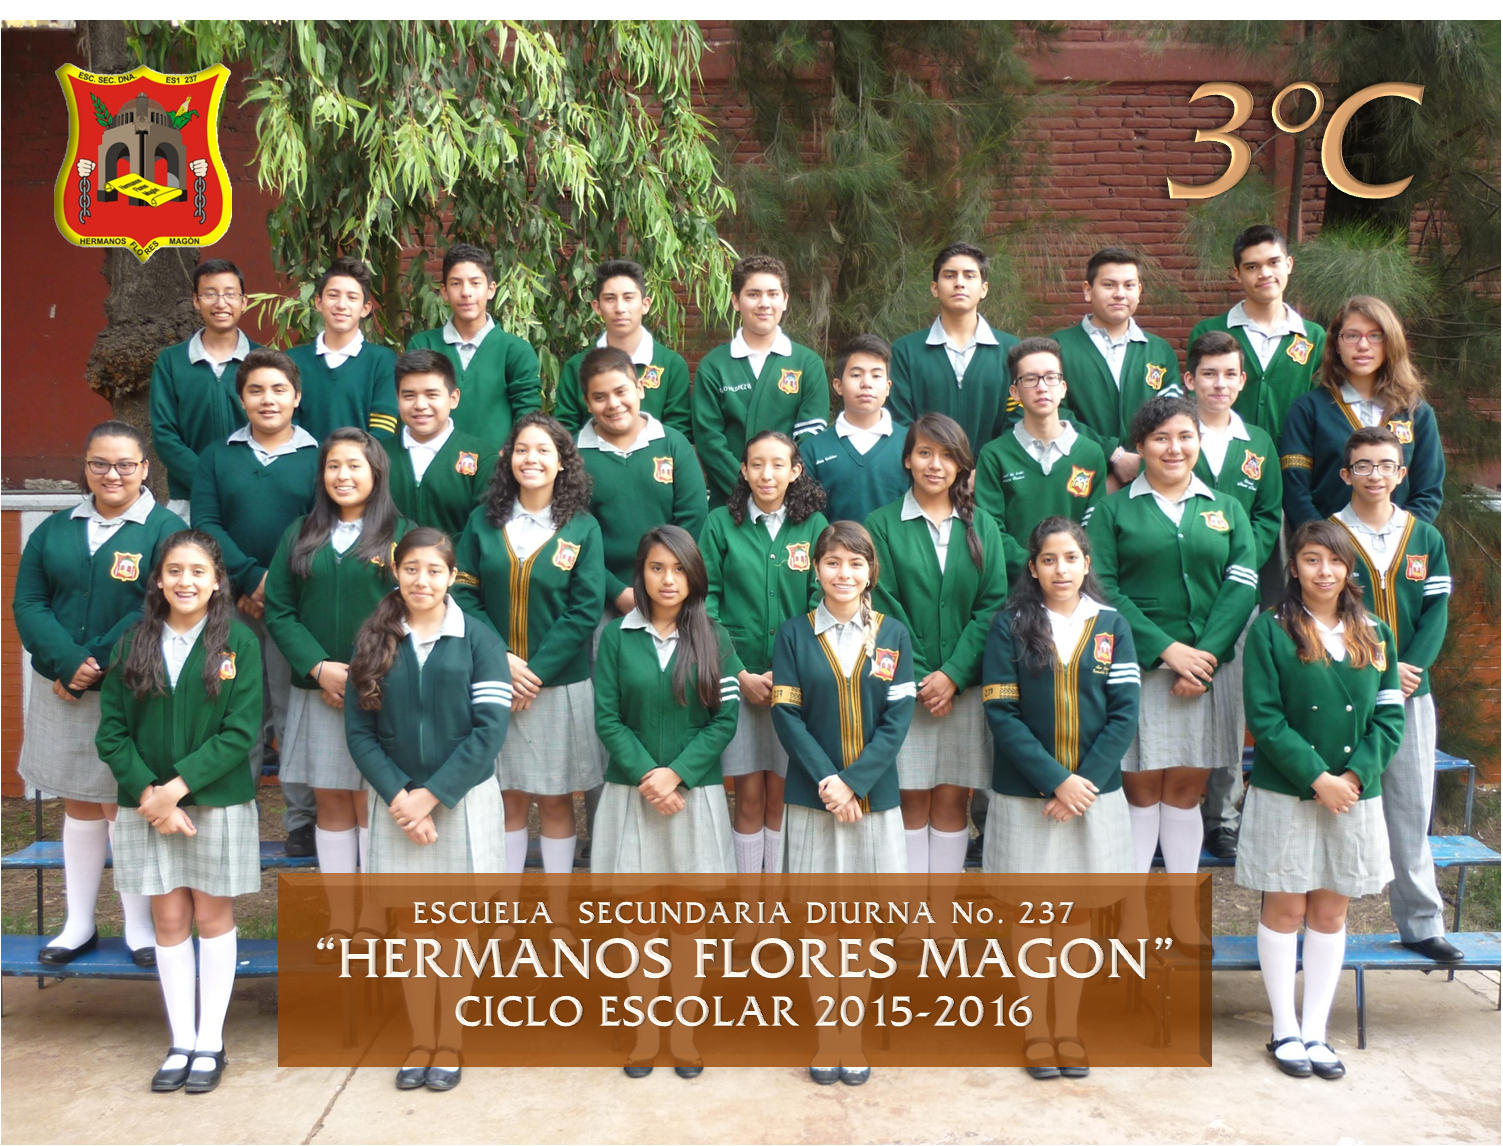 Fotos grupales Ciclo 2015-2016 - Secundaria 237 Hermanos Flores Magón